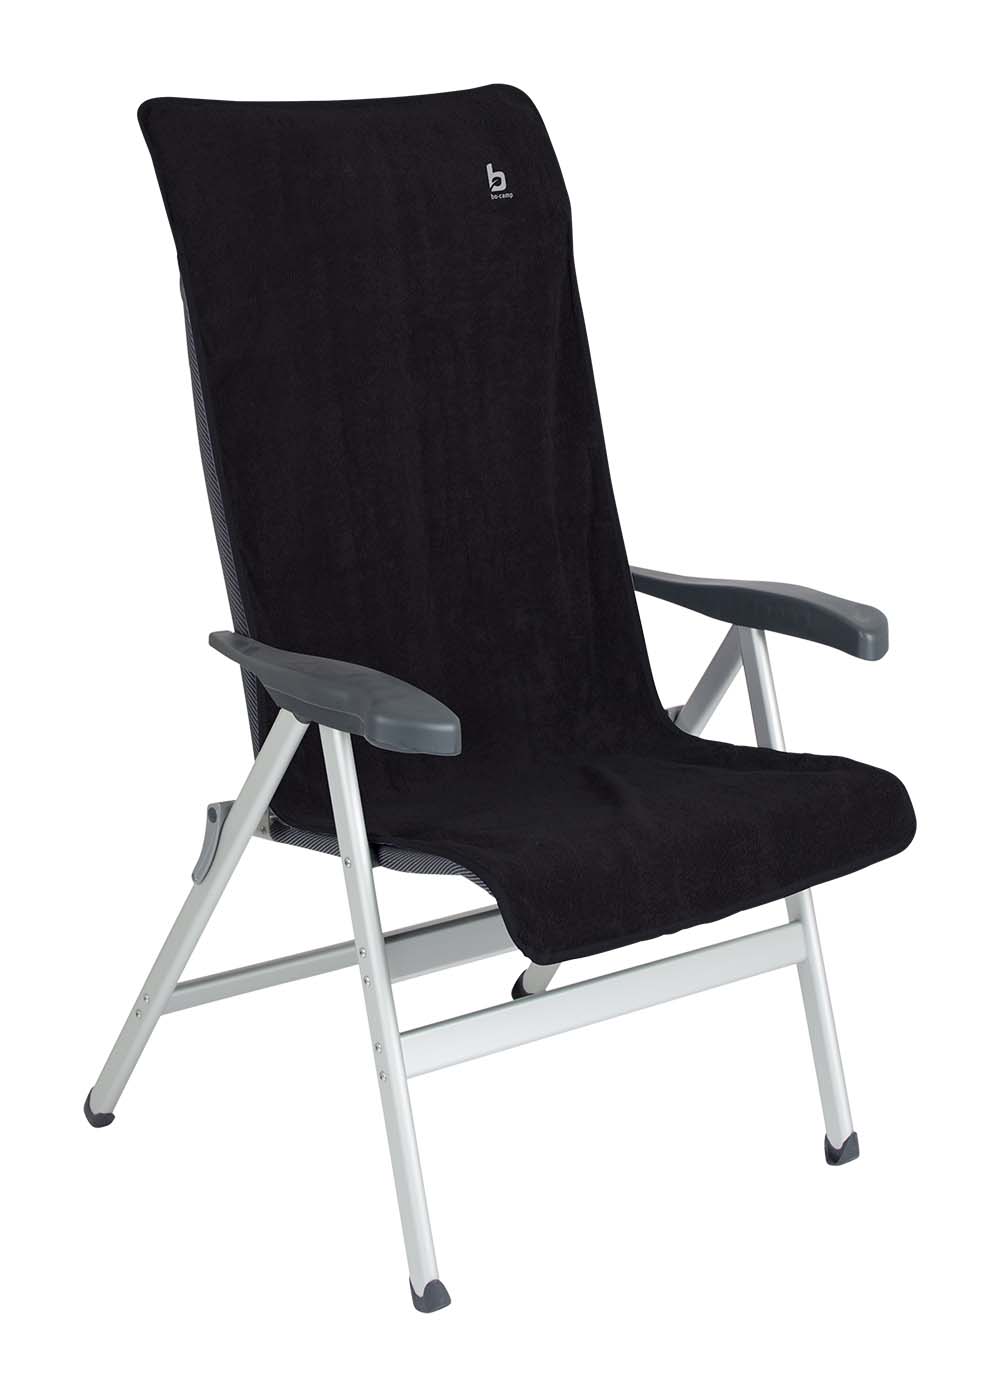 1849285 Een universele stoelhoes voor (kampeer)stoelen. Zorgt voor optimaal zitcomfort en biedt bescherming aan de stoel. De stoelhoes is universeel toepasbaar.